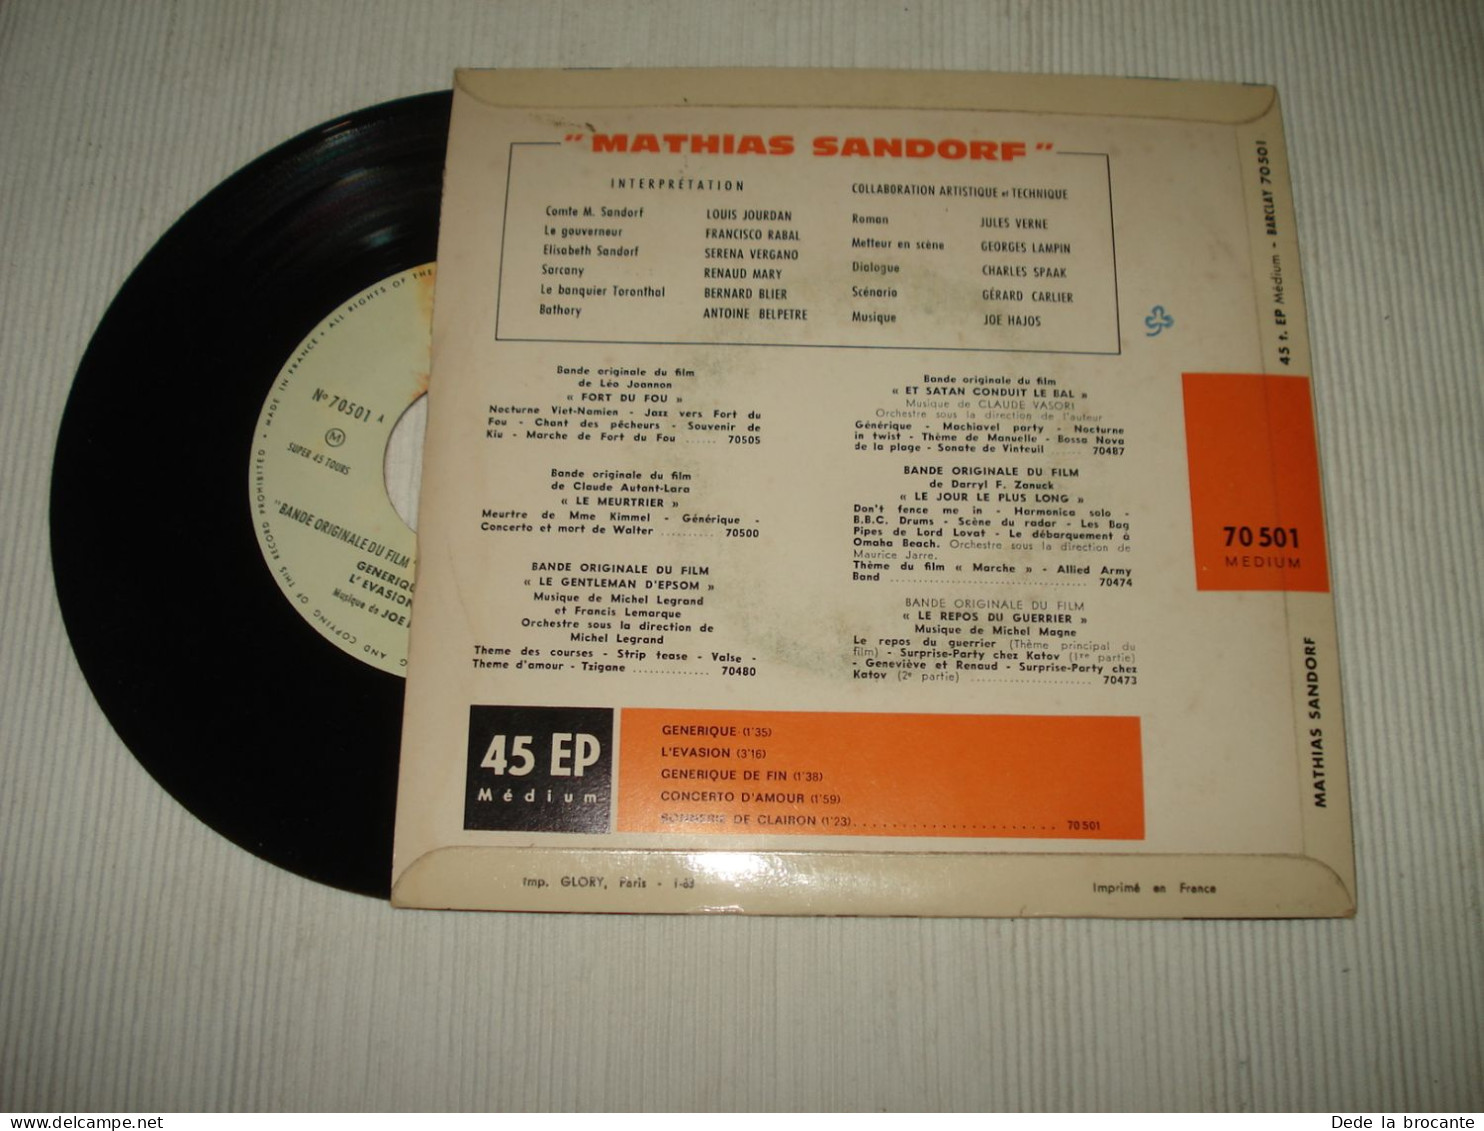 B14 / Joe Hajos – Mathias Sandorf - EP - 7" + Languette  70 501 - Fr 1963  EX/EX - Música De Peliculas